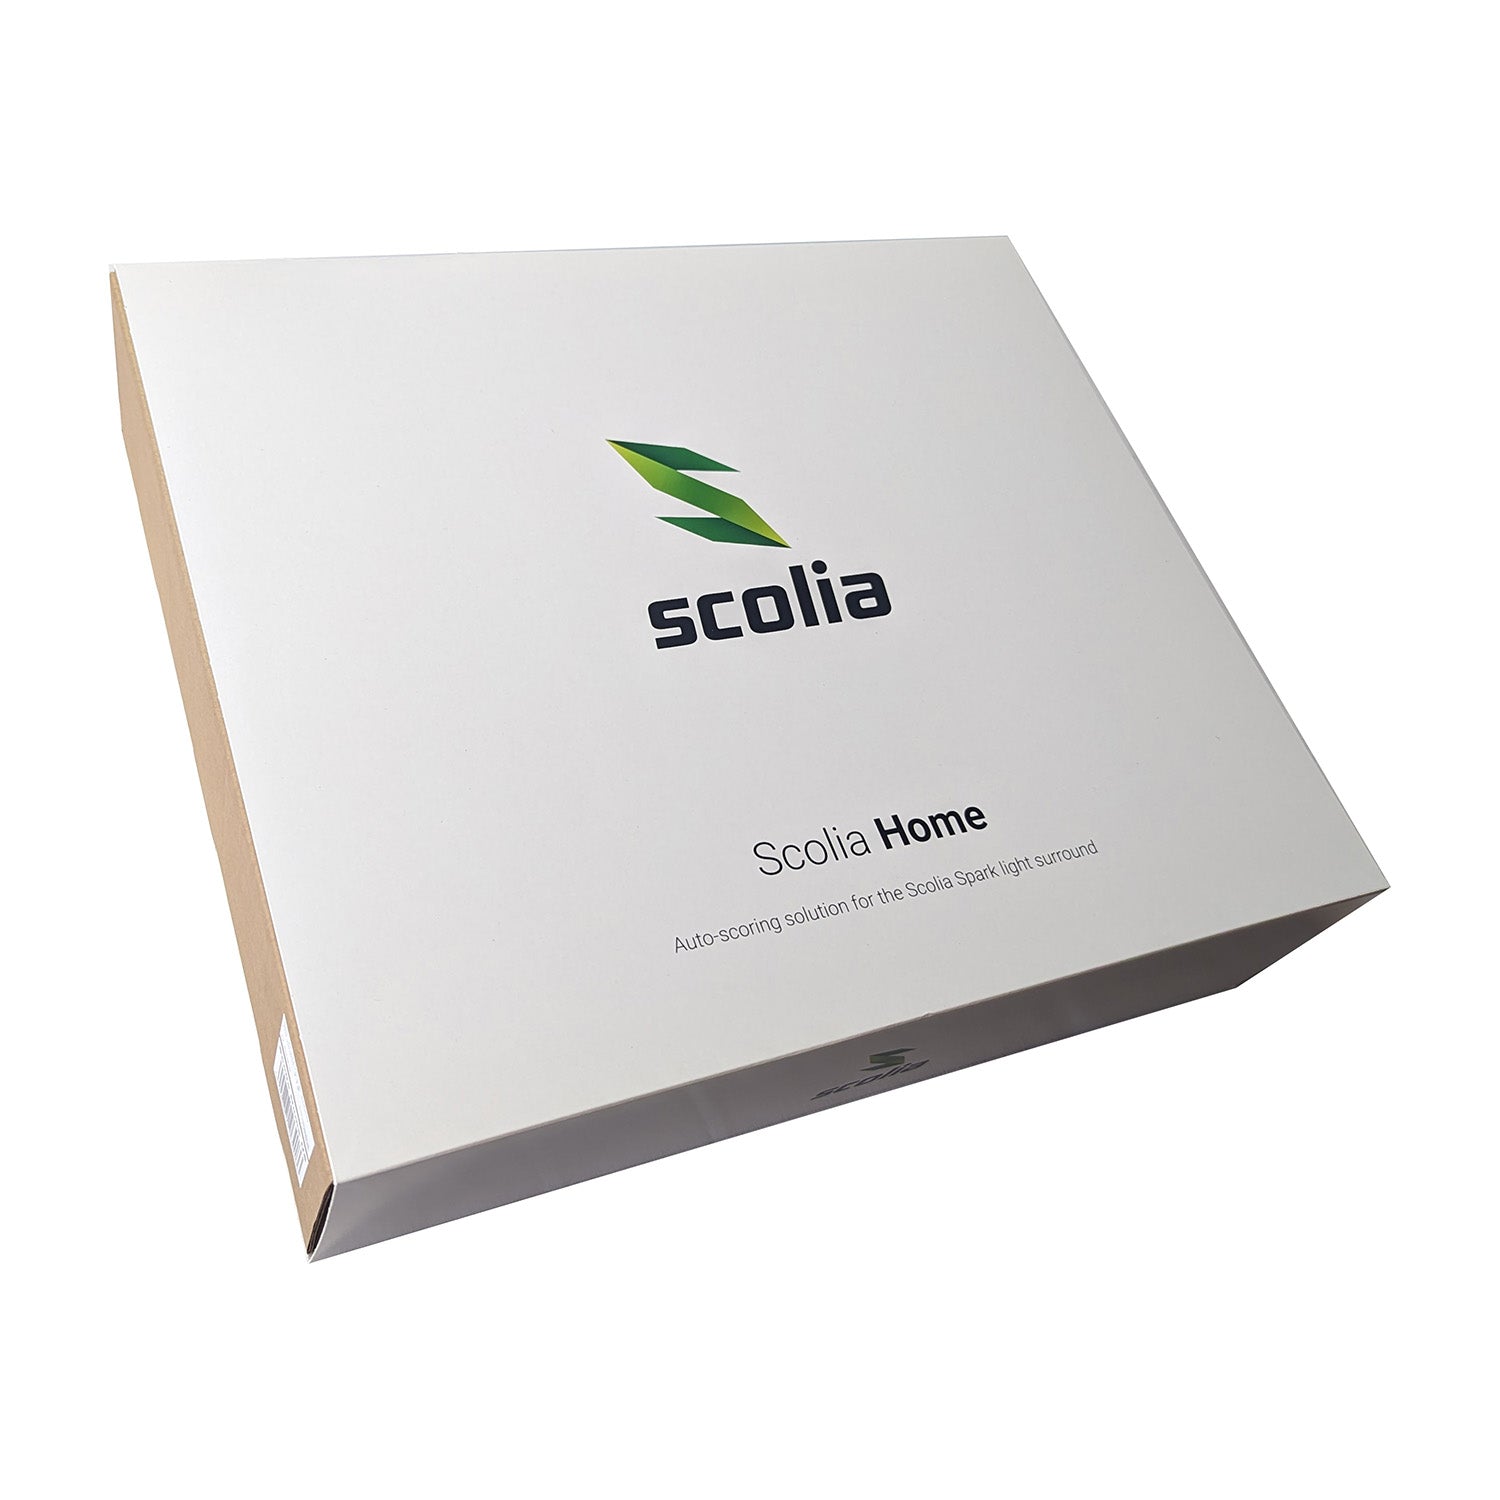 Scolia Home + Termote 3.0